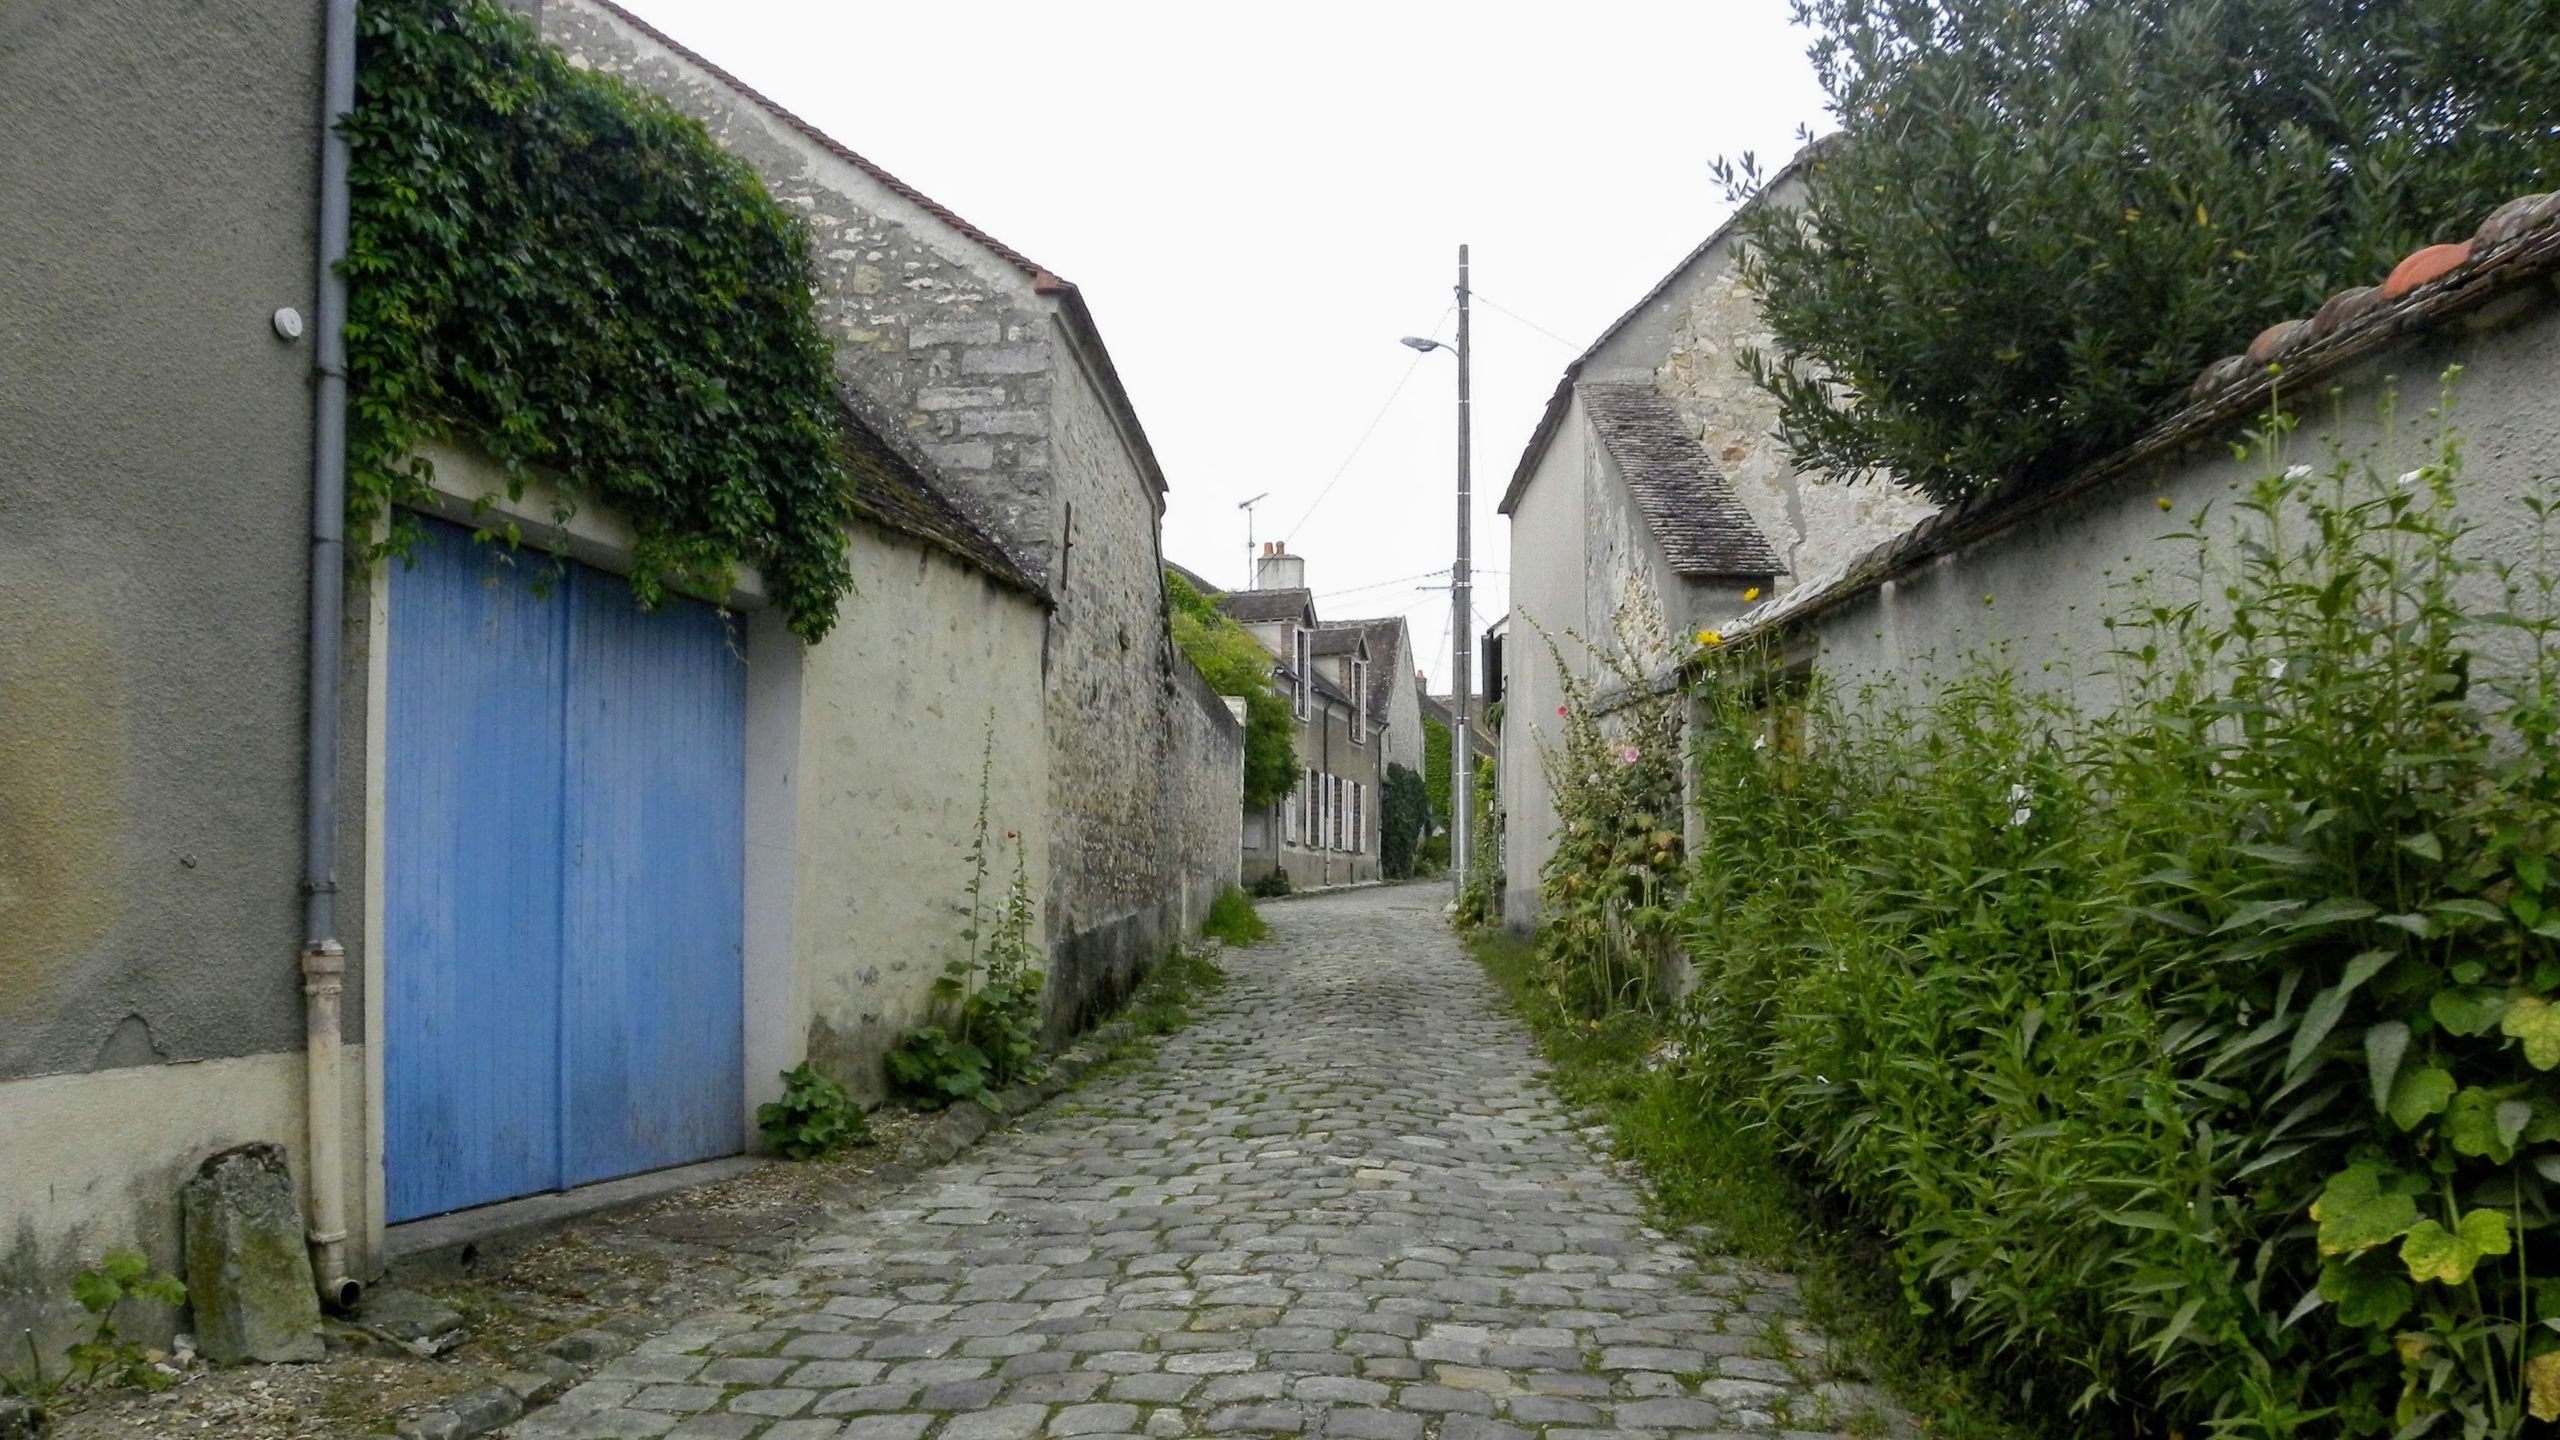 石造りの倉庫や家に挟まれた、石畳の小道。